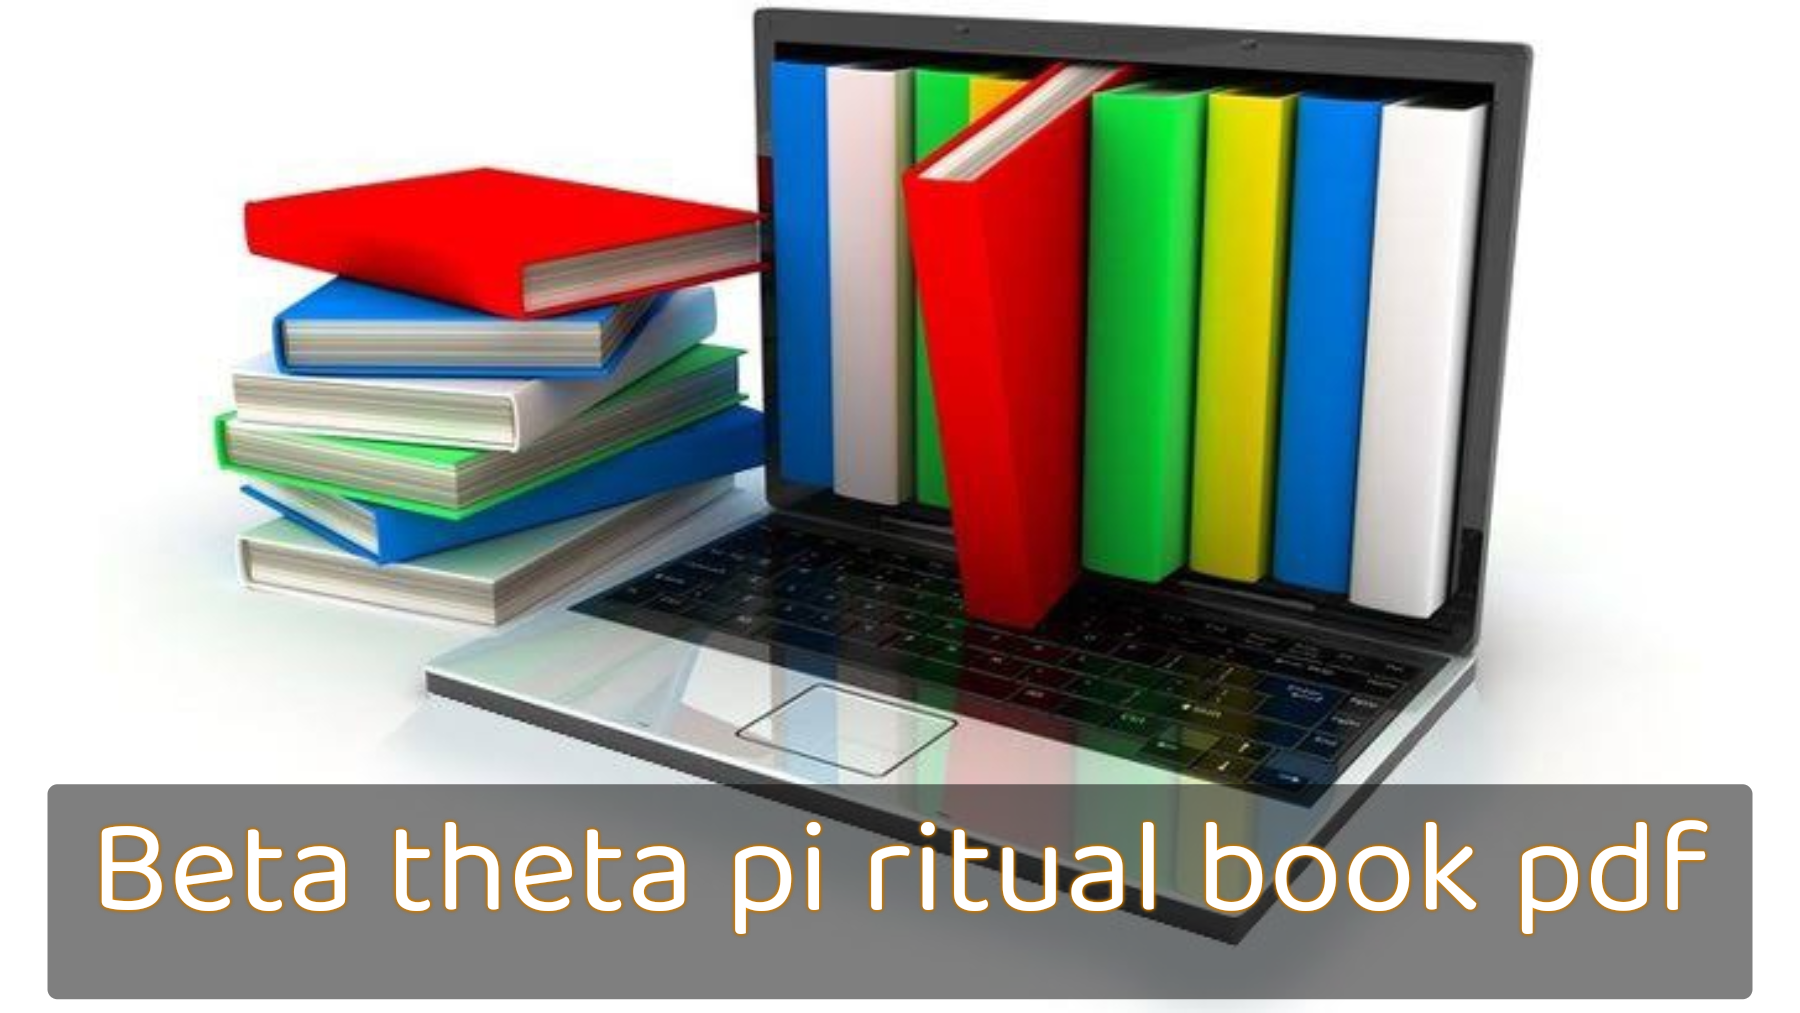 Beta theta pi ritual book pdf, Beta theta pi logo, Beta theta pi colors, Beta theta pi motto